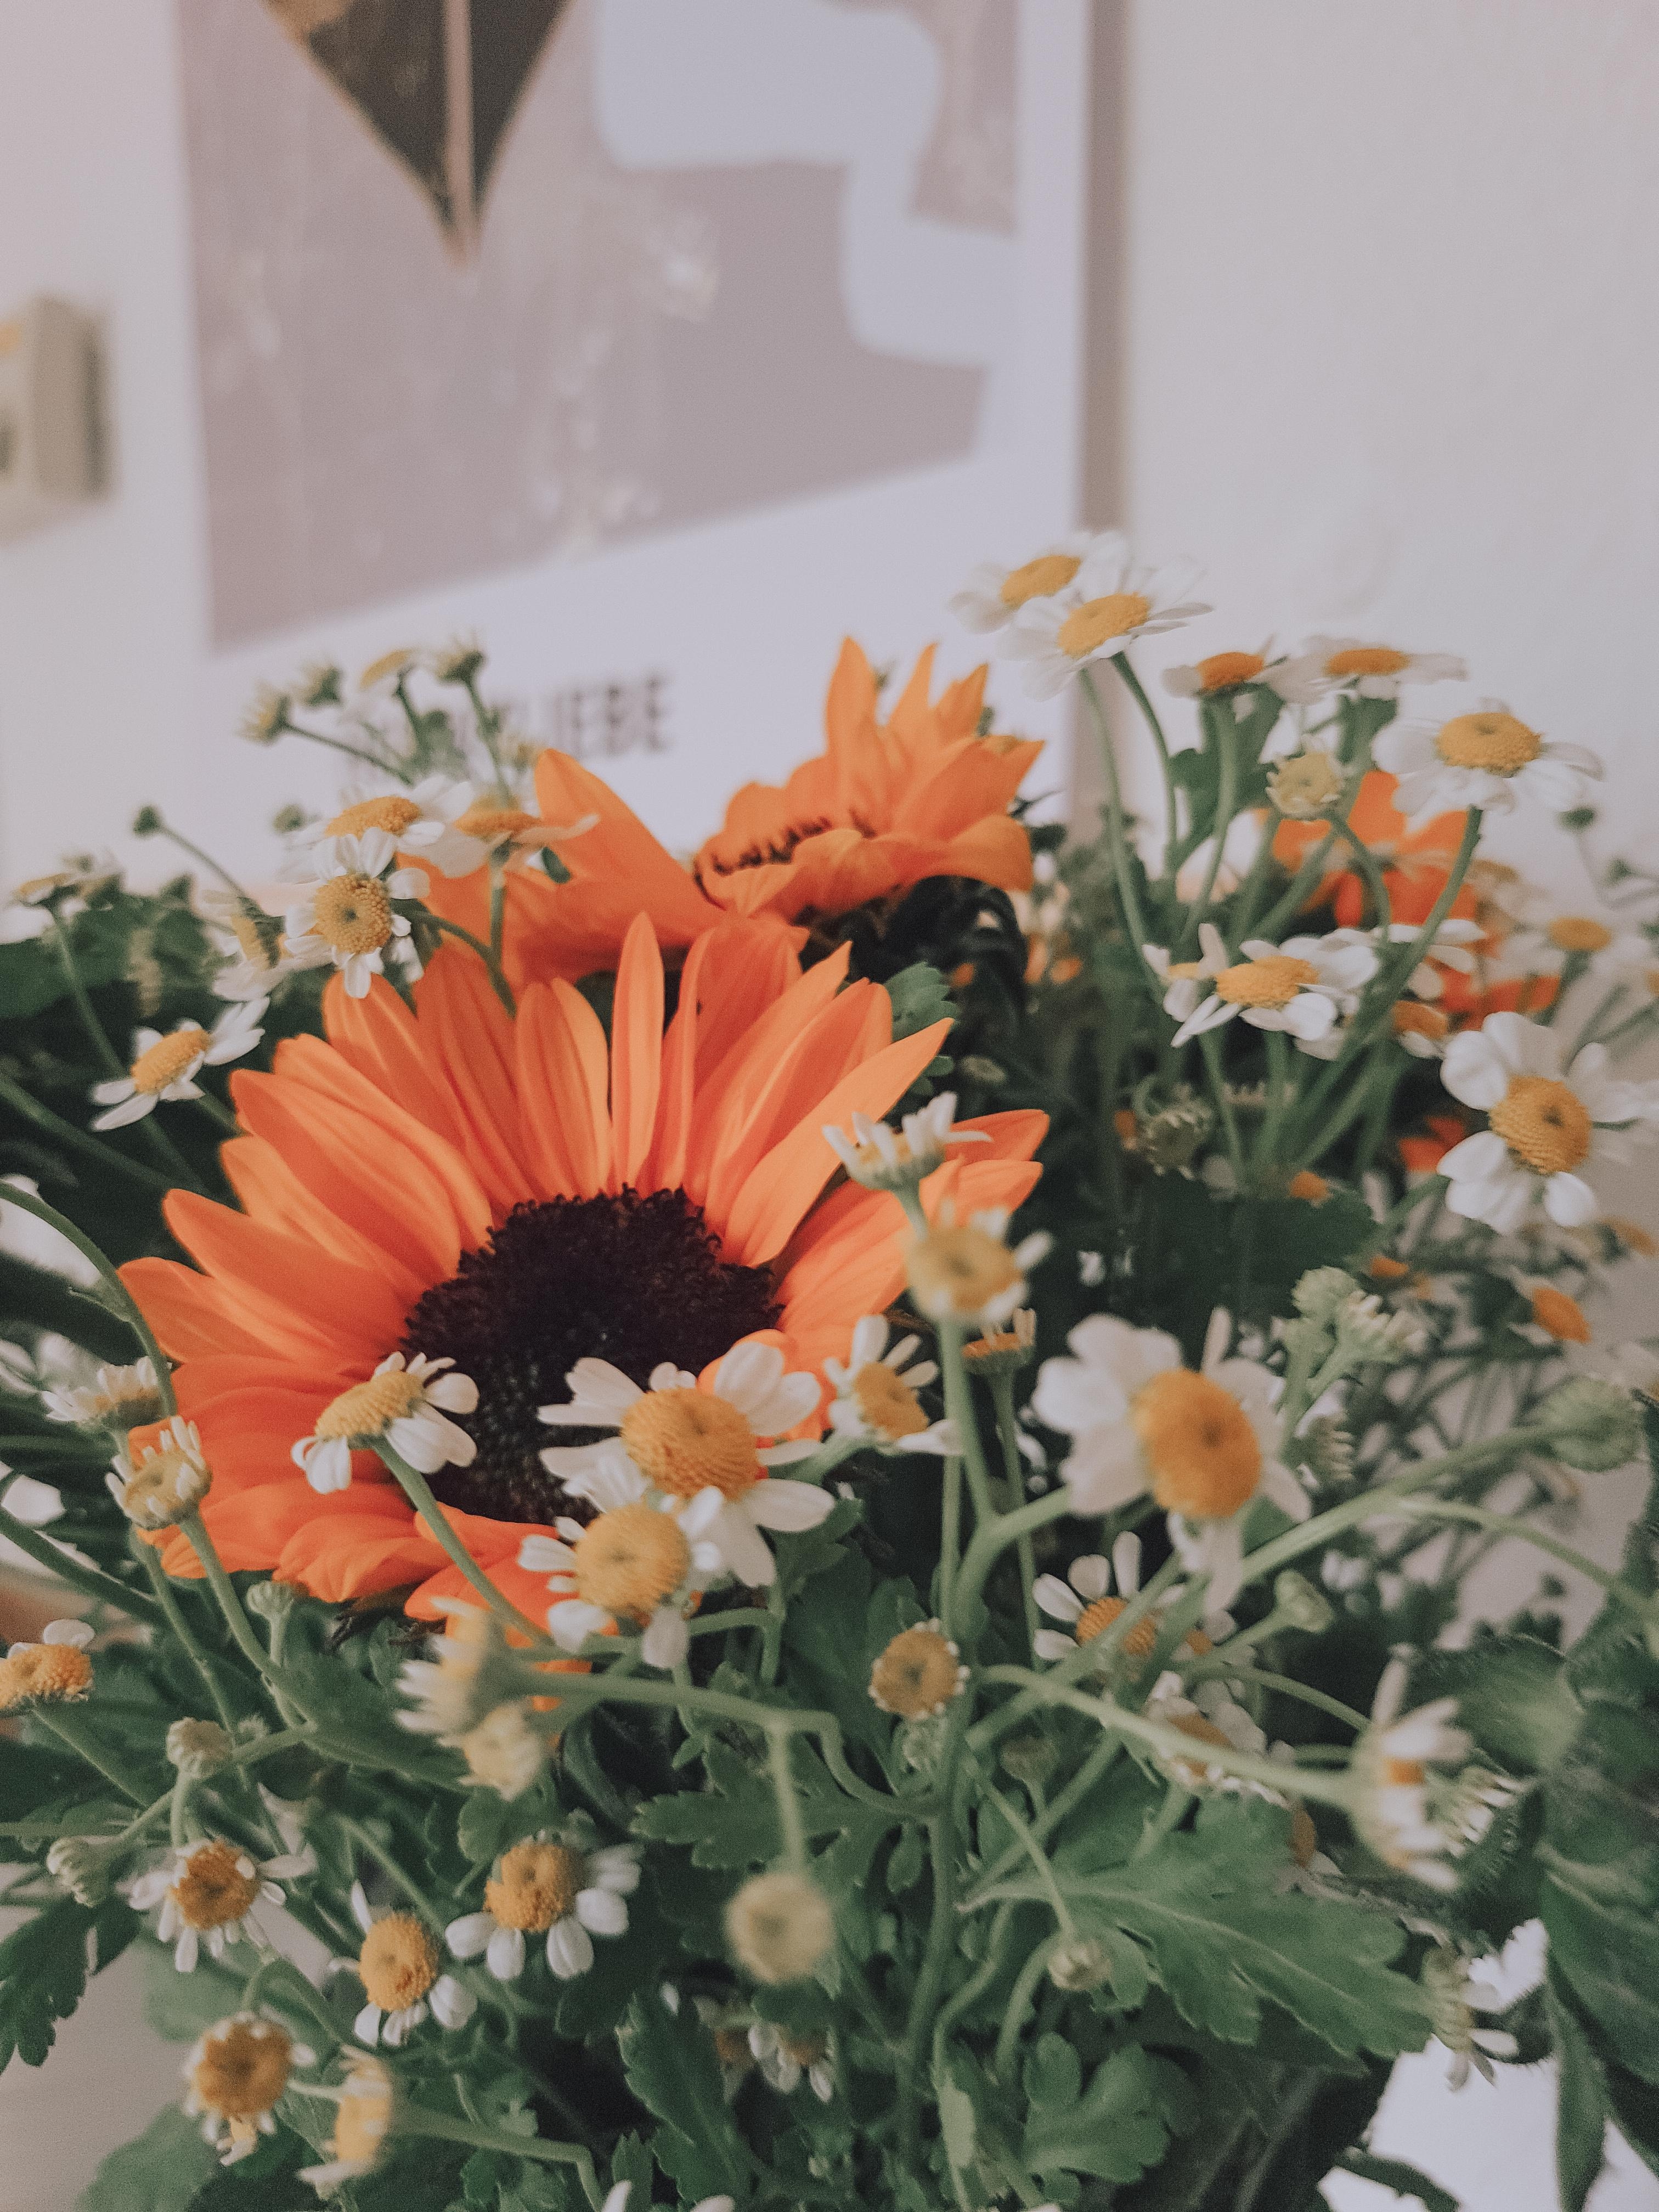 #freshflowerfriday #Sonnenblumen #Kamille #Blumenstrauß #blumenliebe